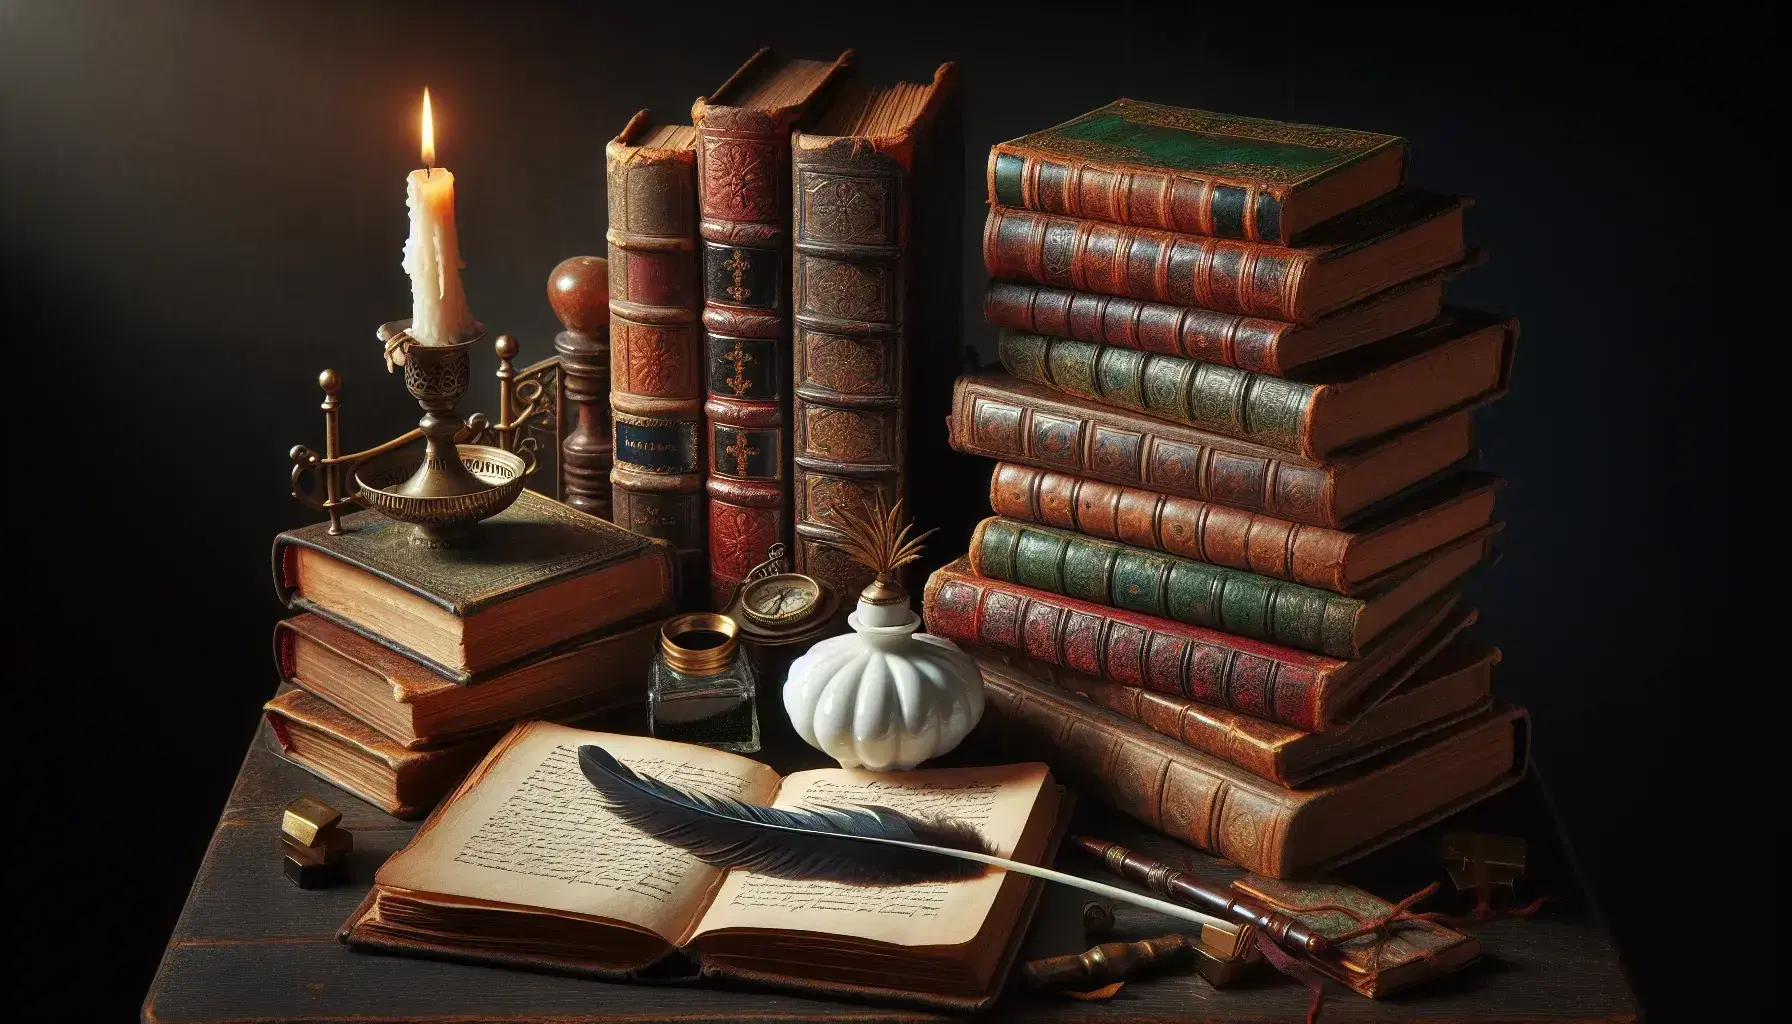 Libros antiguos apilados en mesa de madera oscura con tintero de porcelana, pluma de ave y vela encendida, evocando escritura clásica y ambiente acogedor.